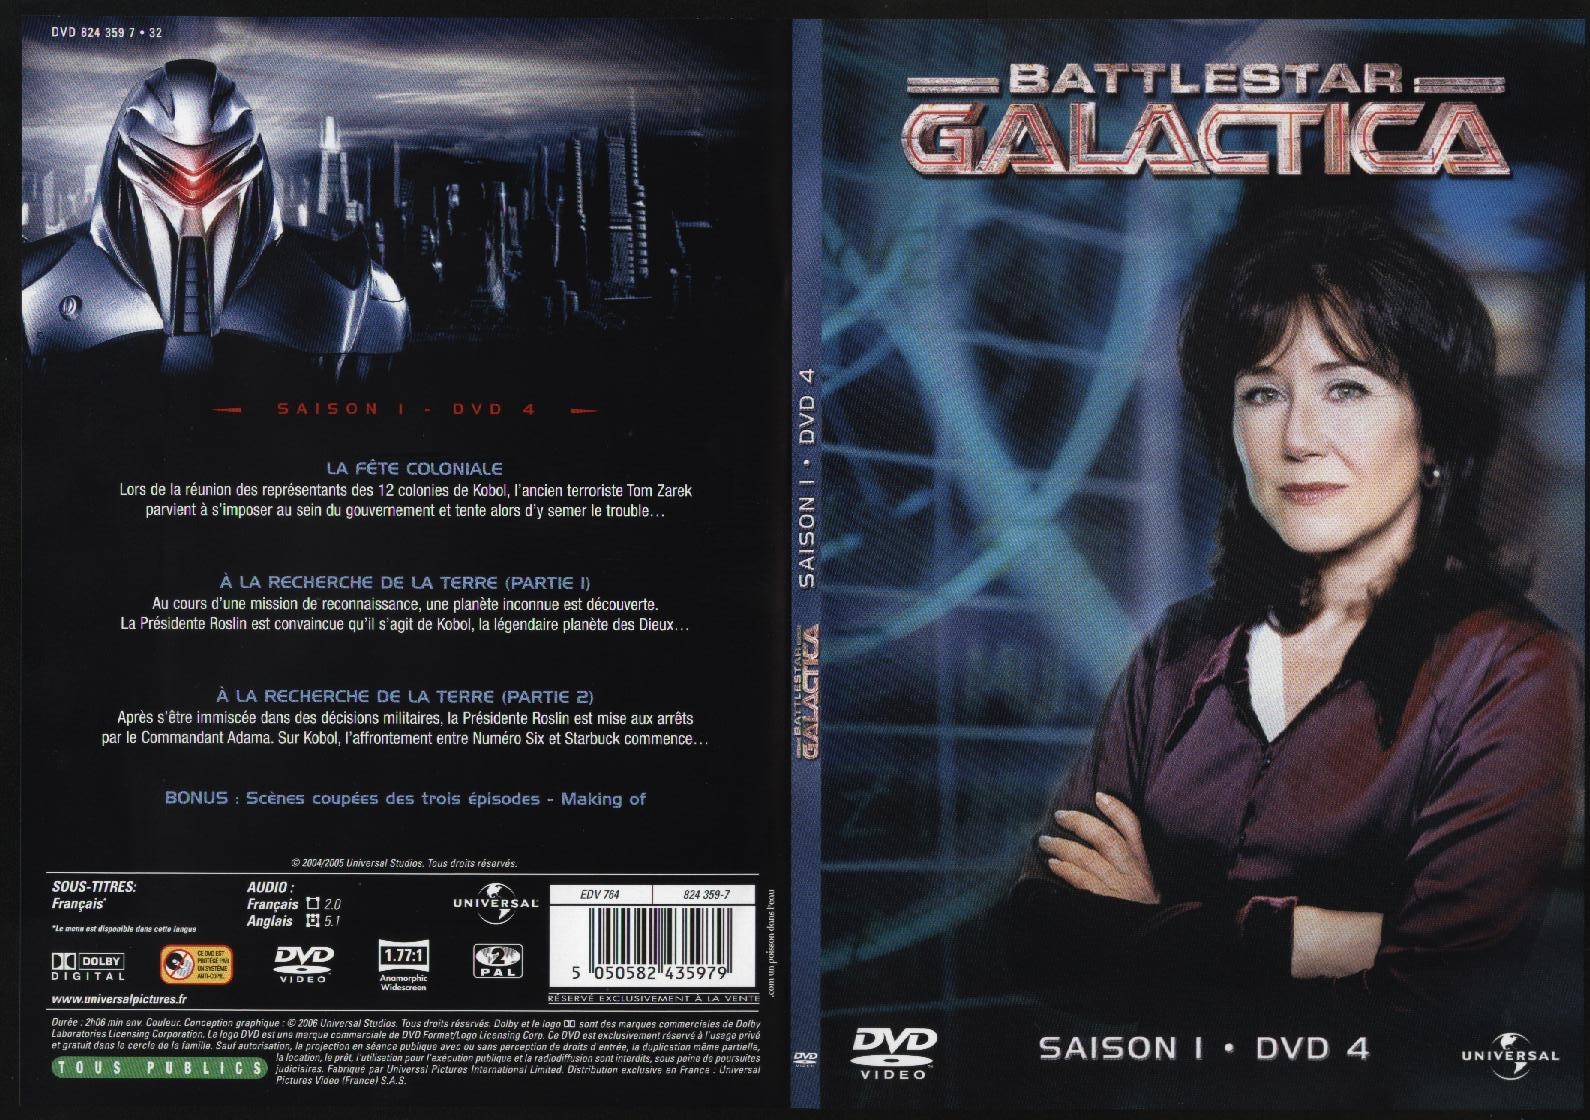 Jaquette DVD Battlestar Galactica saison 1 dvd 4